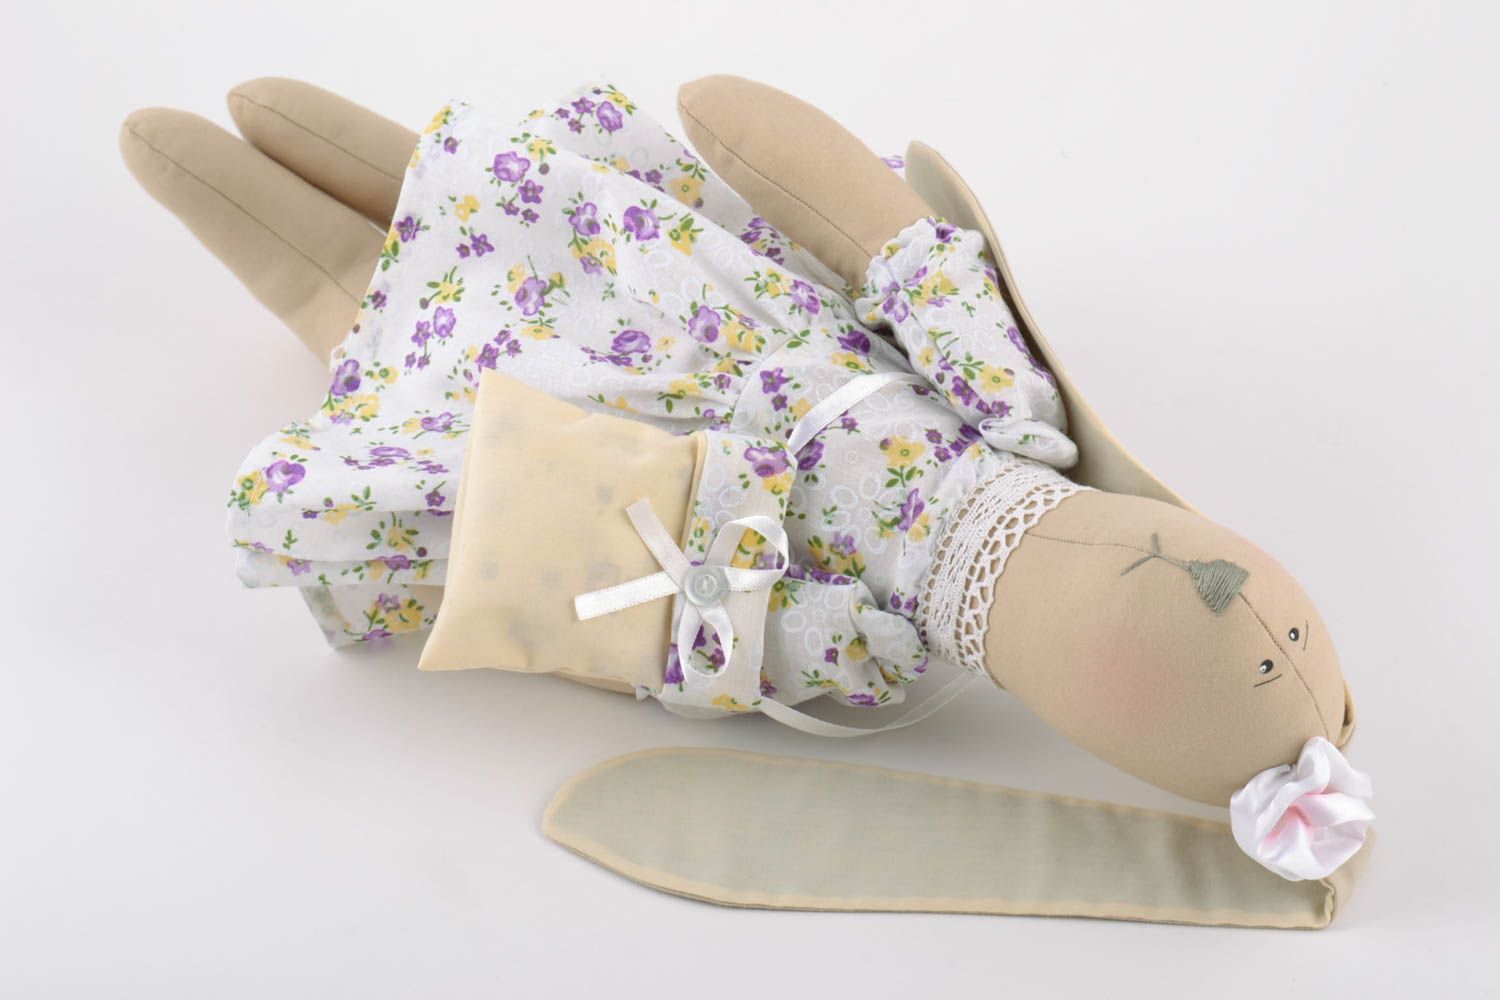 Textil Kuscheltier Hase im Kleid mit Tasche aus Leinen Spielzeug für Kinder  foto 2